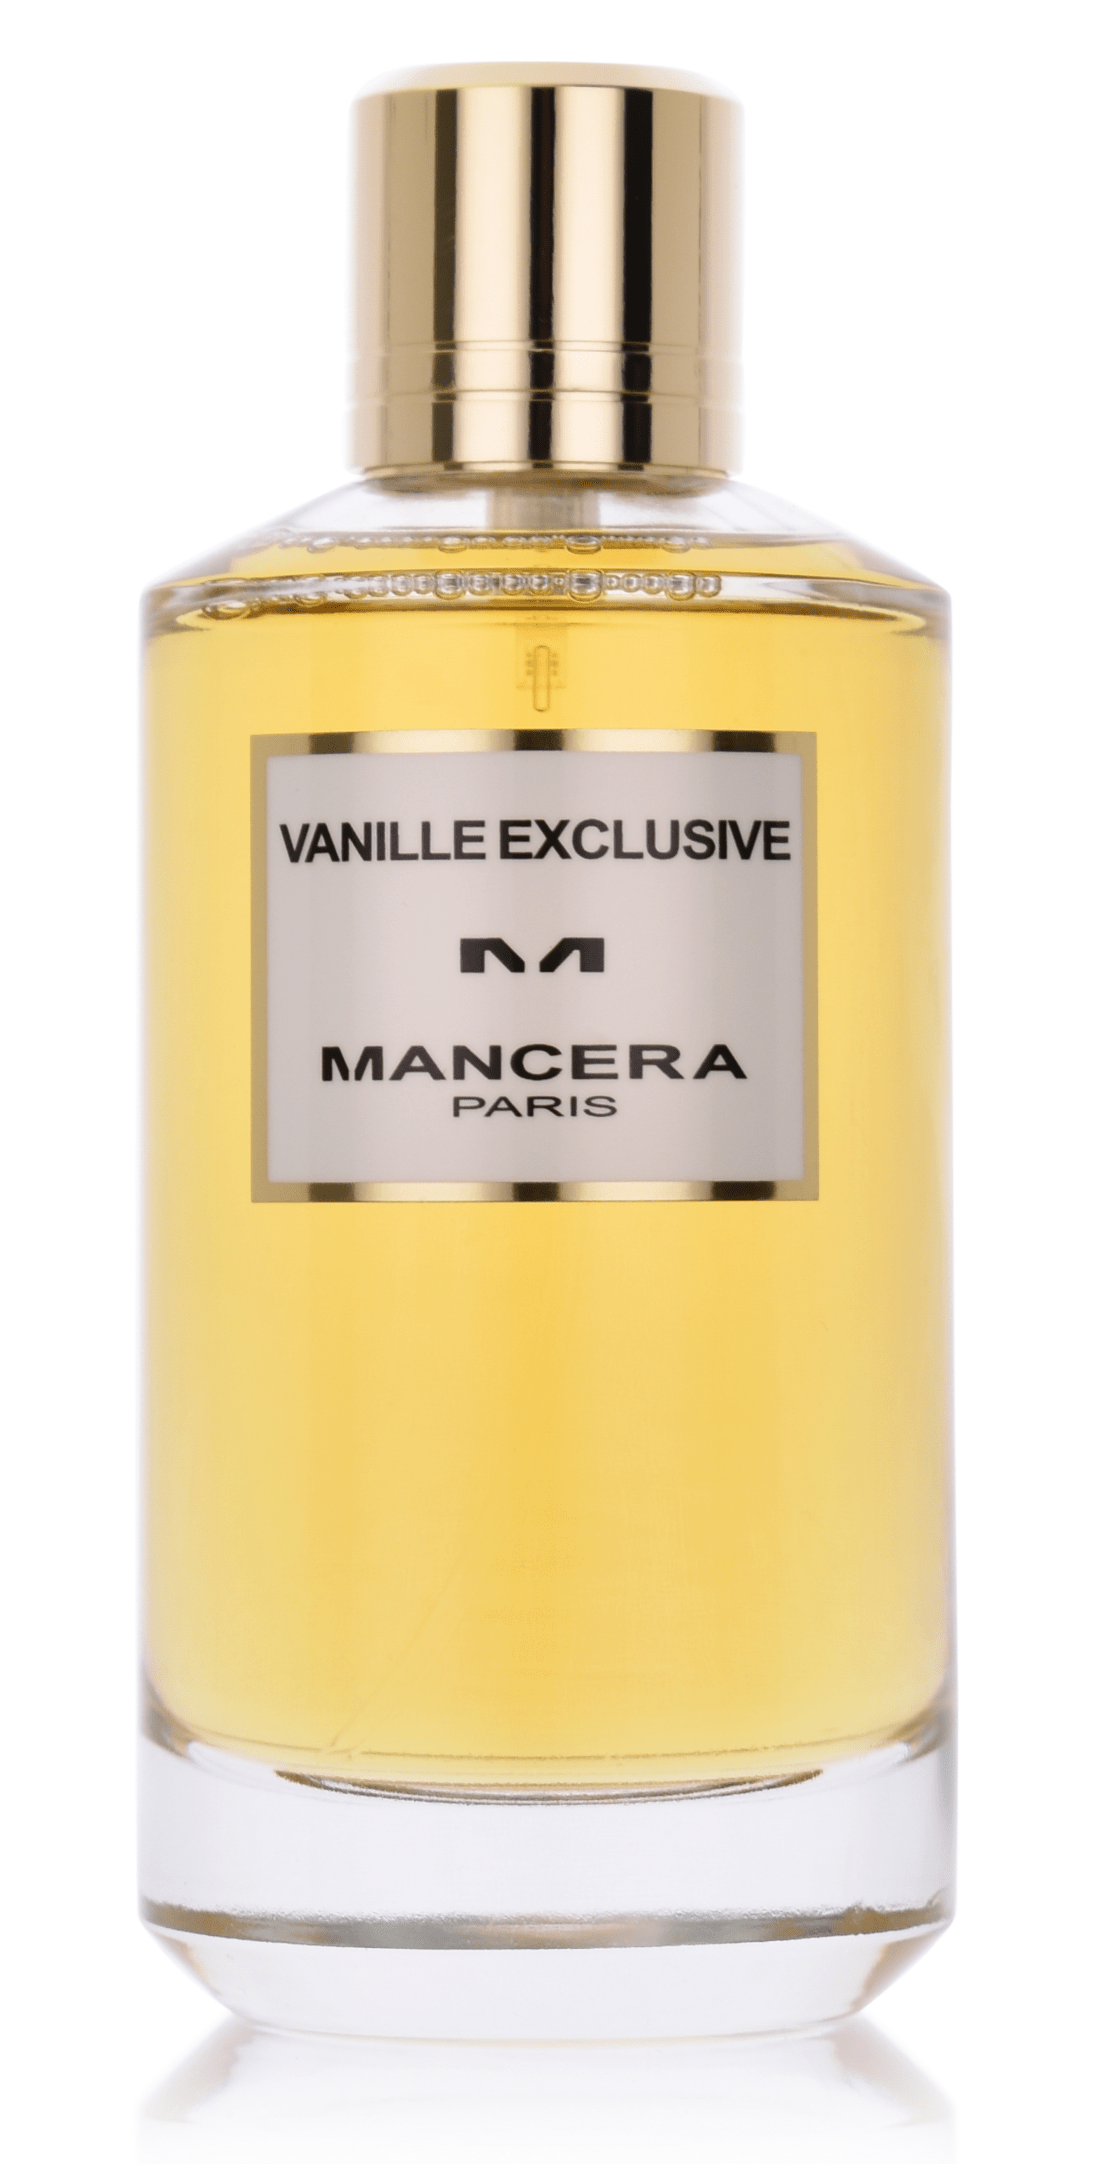 Mancera Vanille Exclusive 5 ml Eau de Parfum Abfüllung